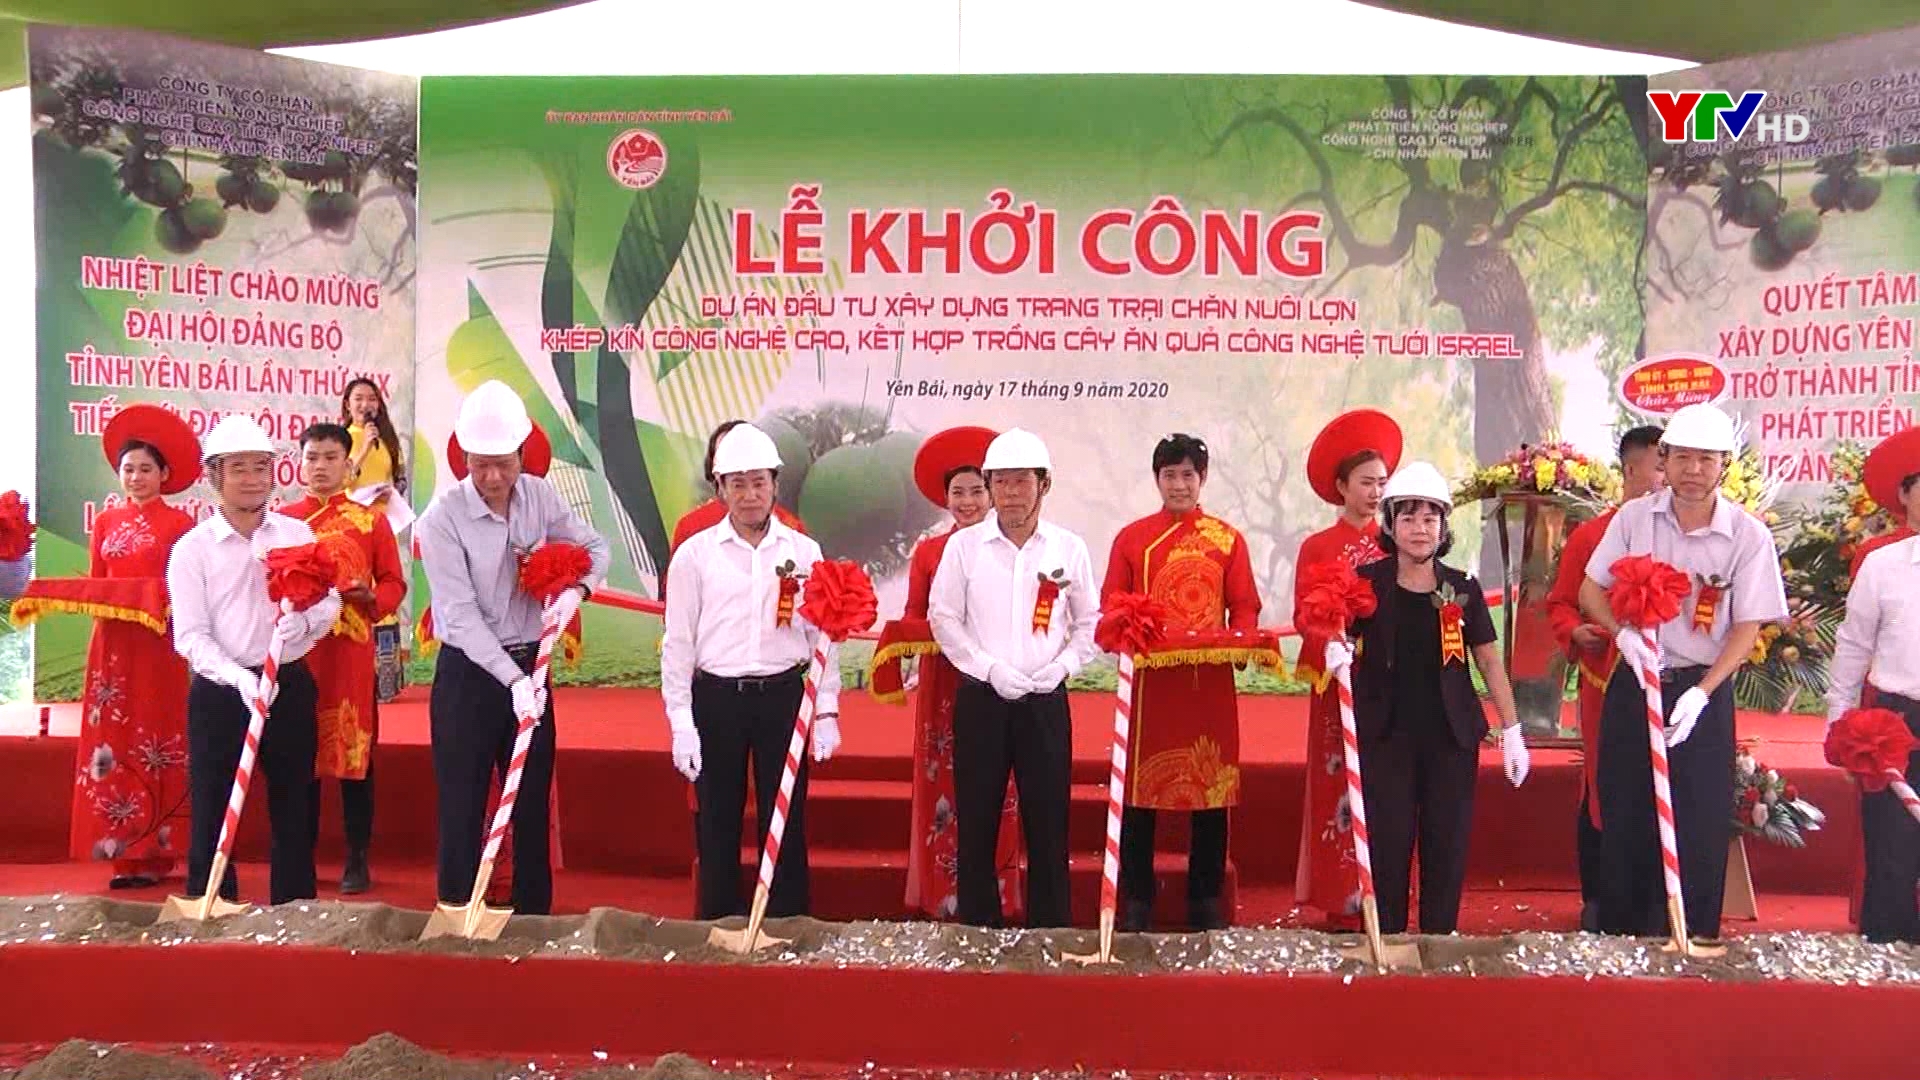 Khởi công Dự án đầu tư xây dựng trang trại chăn nuôi lợn kết hợp trồng cây ăn quả tại huyện Văn Yên